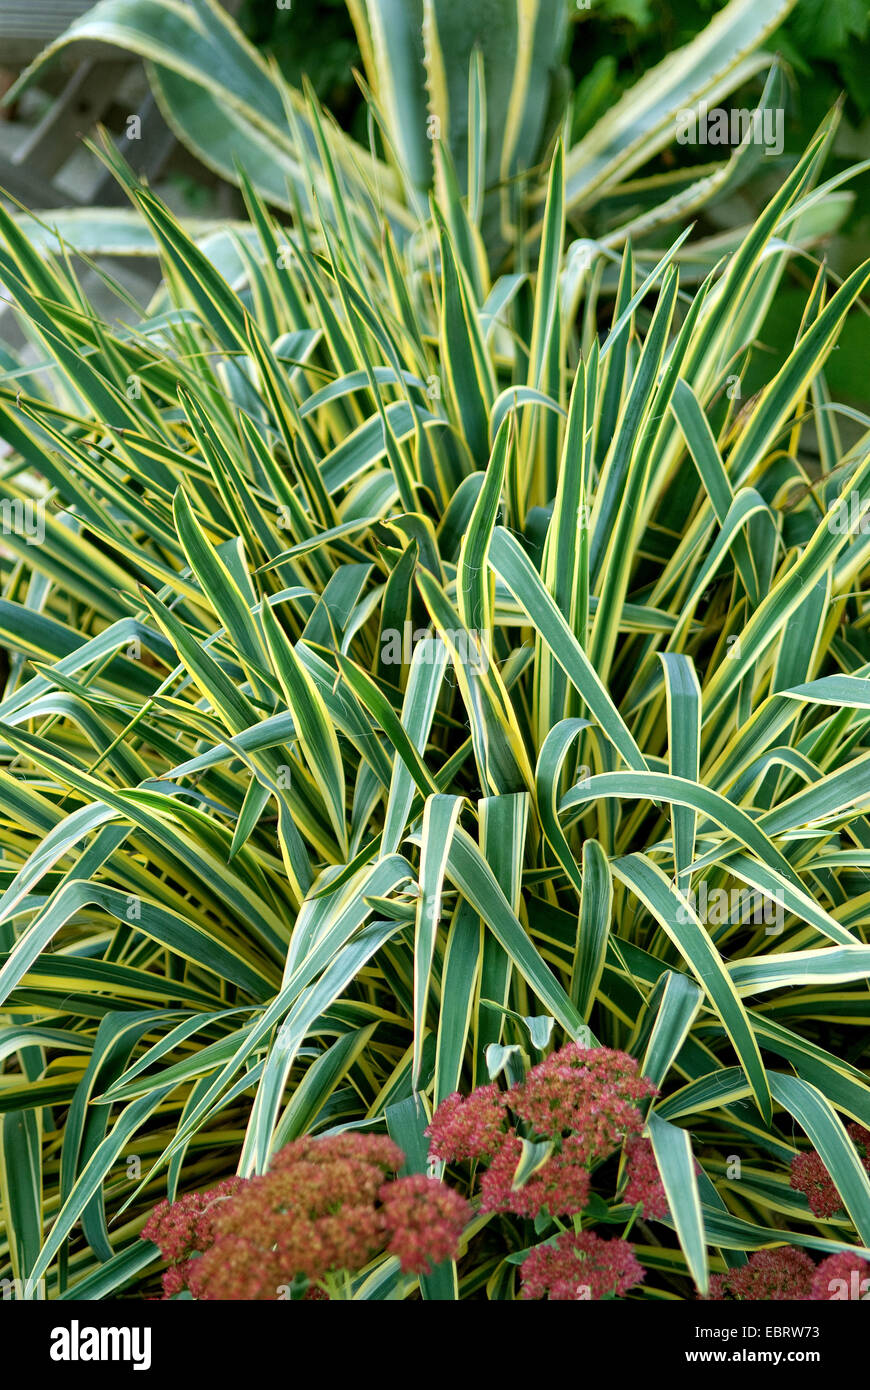 Adam's aguja débiles, hojas de yuca (Yucca filamentosa "brillante", yuca filamentosa de canto canto brillante), cultivar el borde brillante Foto de stock